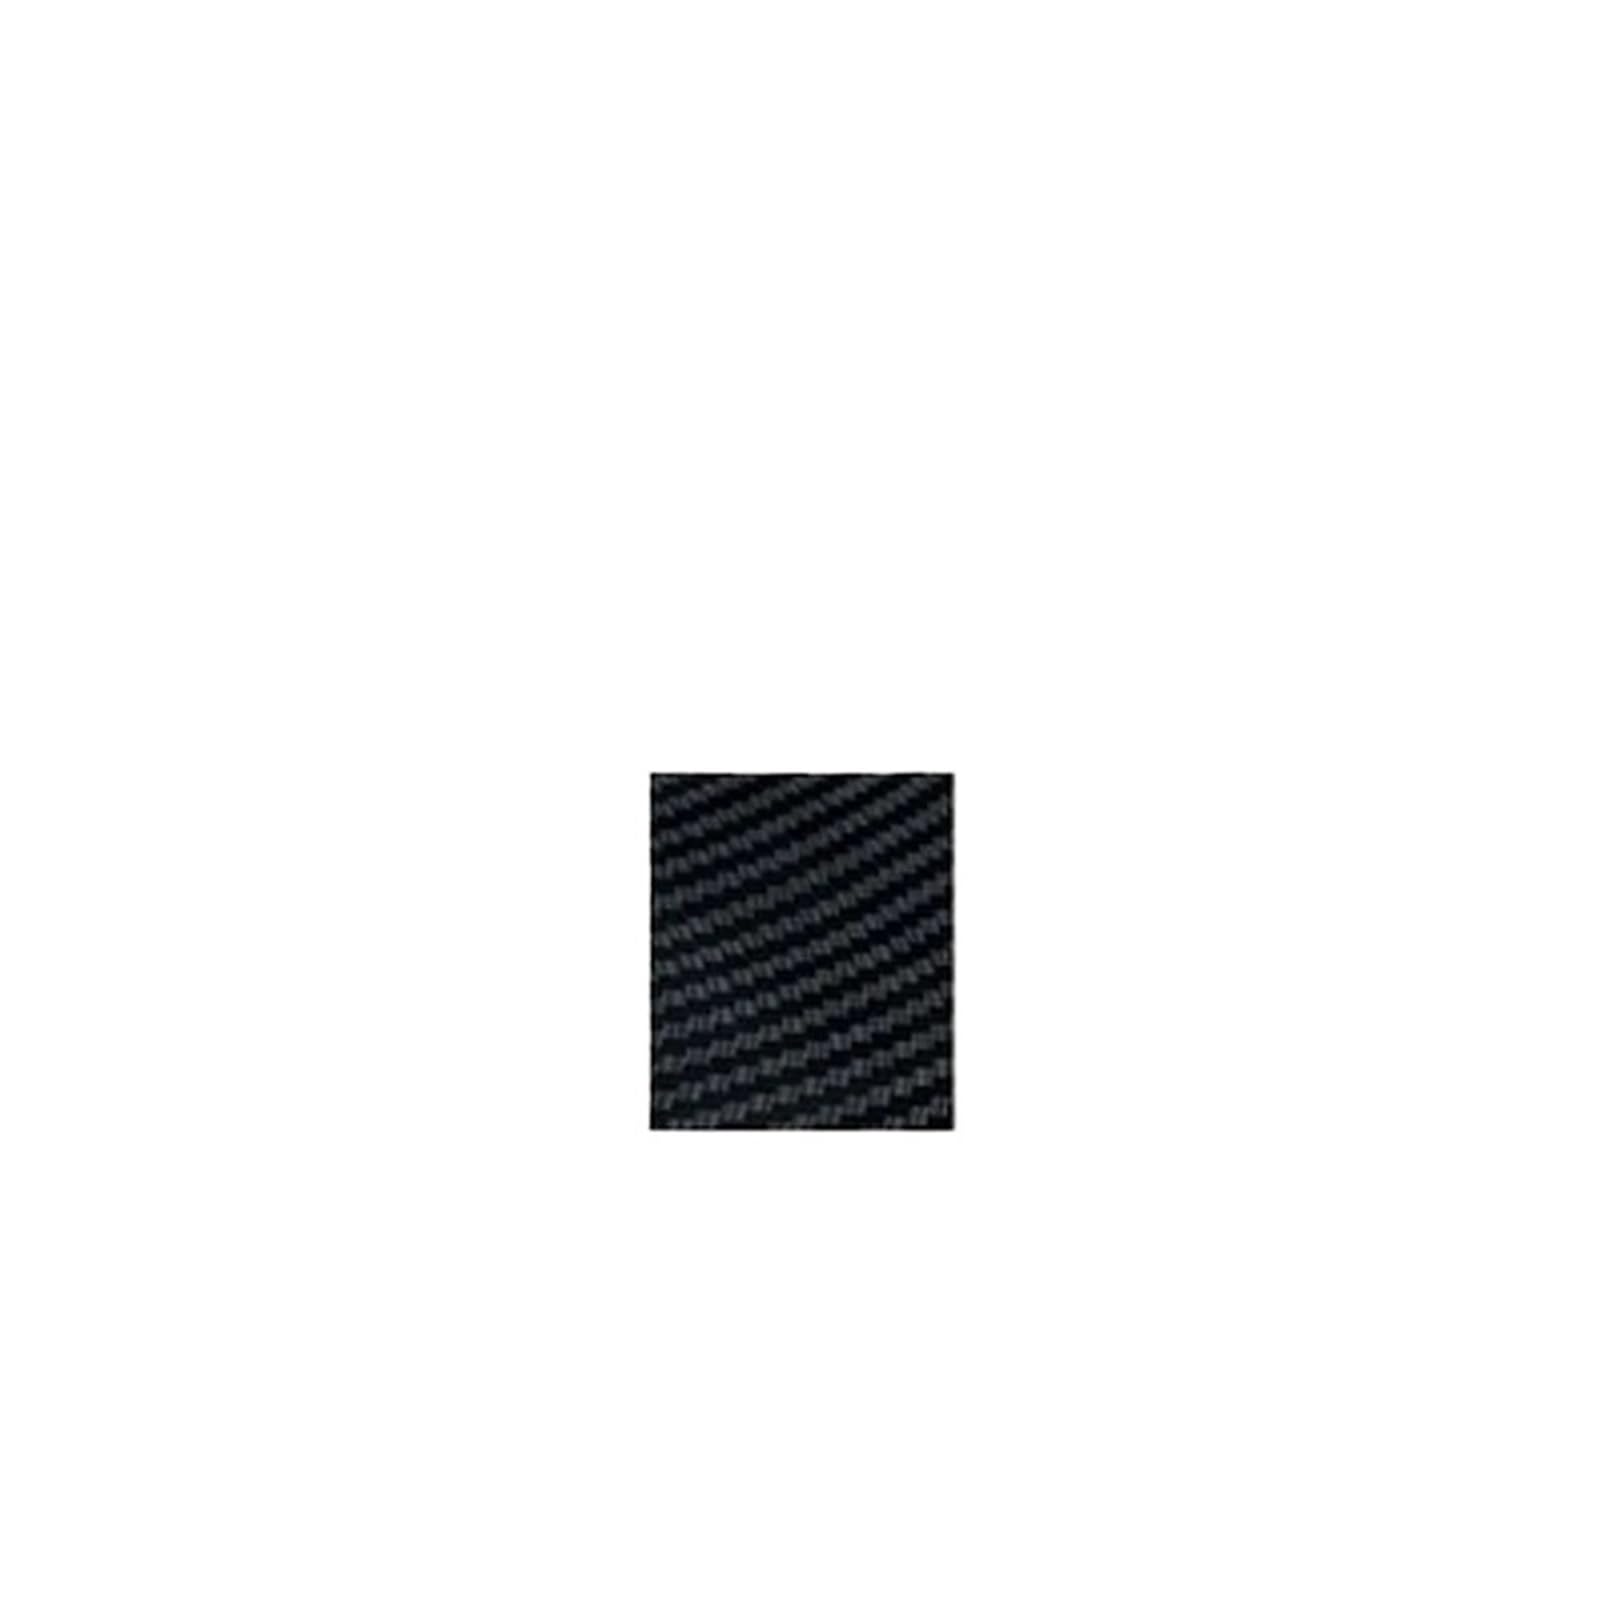 Auto Heckflügel Für Golf MK7 MK7.5 Für TDI Für TGI Für GTE Für GTD 2014-2019 Schwarz Glänzend ABS Car-Styling Lippensplitterverkleidung Heckspoilerflügel Auto Spoiler Wing(Glossy black) von ZCera